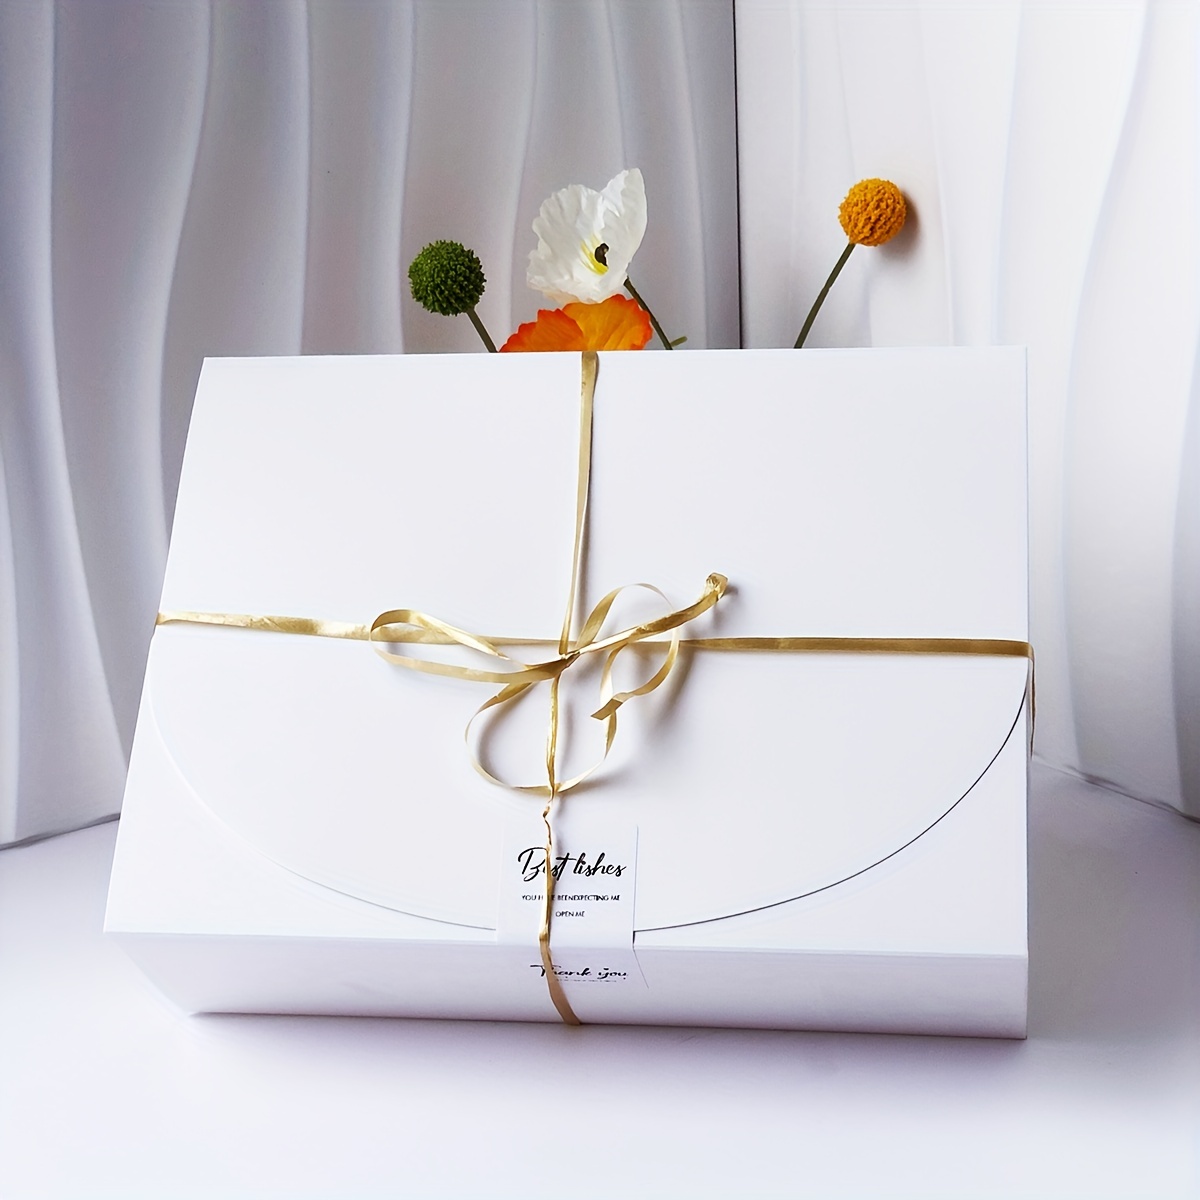 Window Heart Shaped Boxes - Fantak Packaging – Fantak Packaging